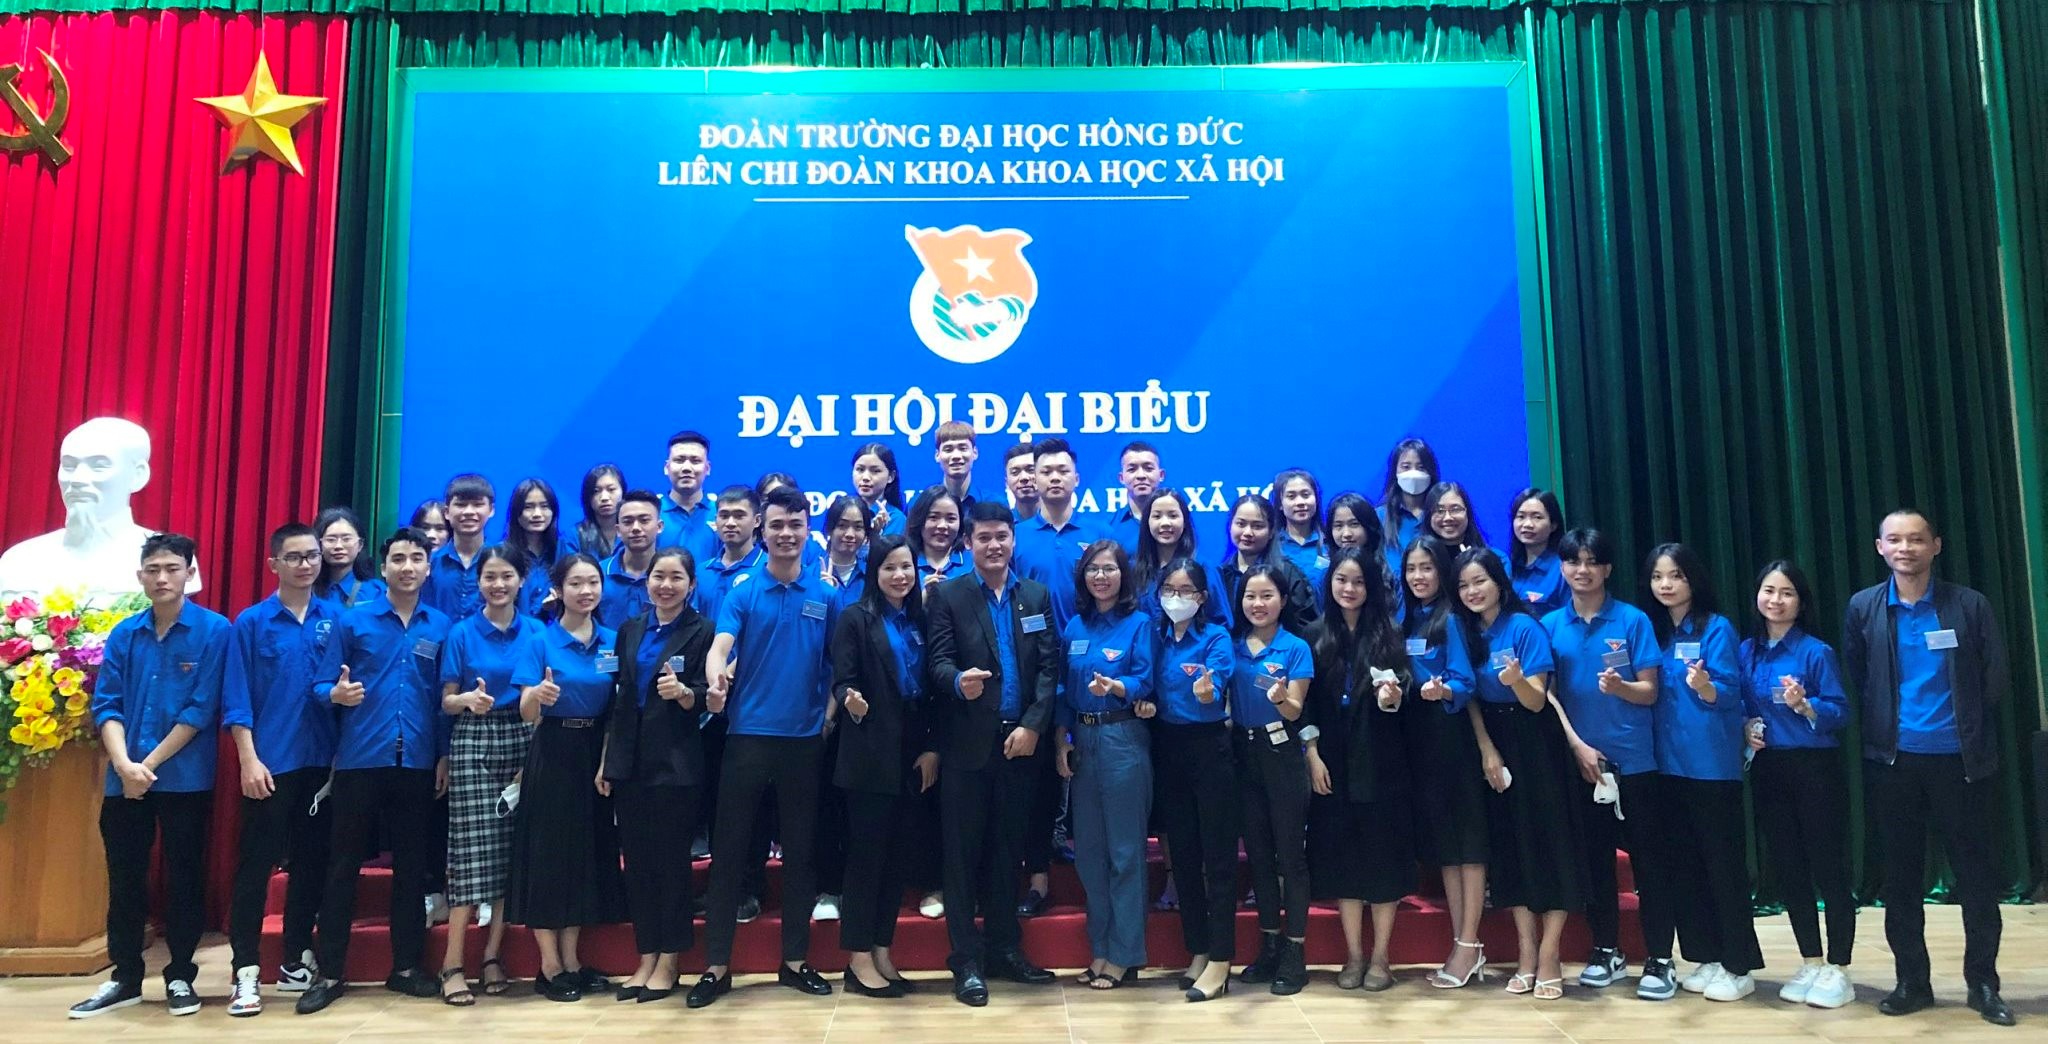 Đại hội đại biểu Đoàn thanh niên cộng sản Hồ Chí Minh Liên chi đoàn khoa Khoa học xã hội nhiệm kỳ 2022-2024